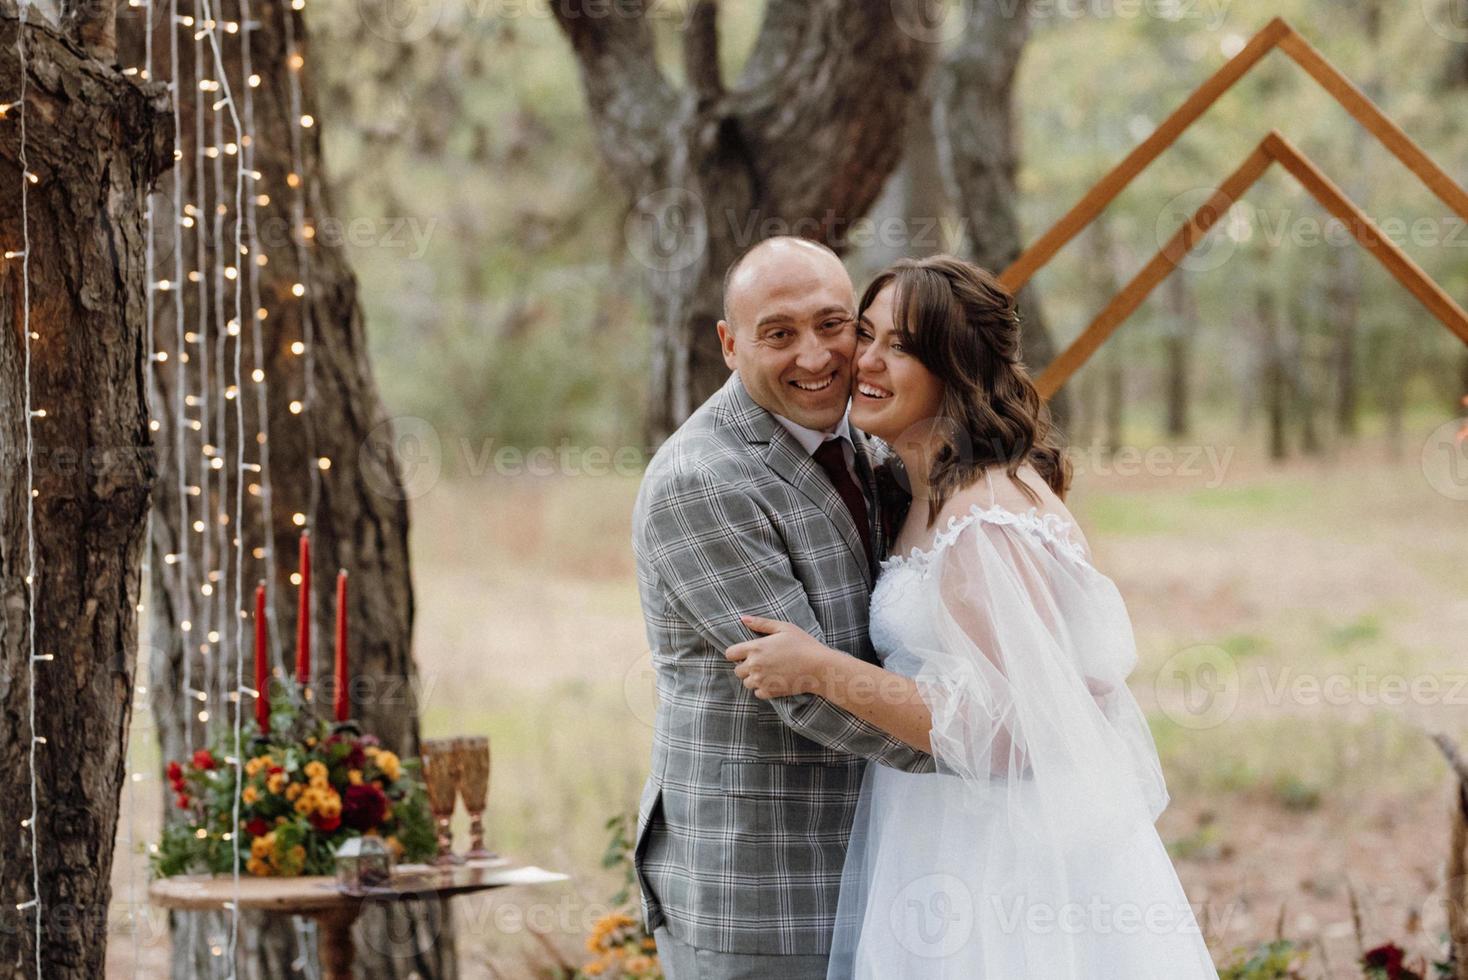 homme et femme se sont fiancés dans la forêt d'automne photo